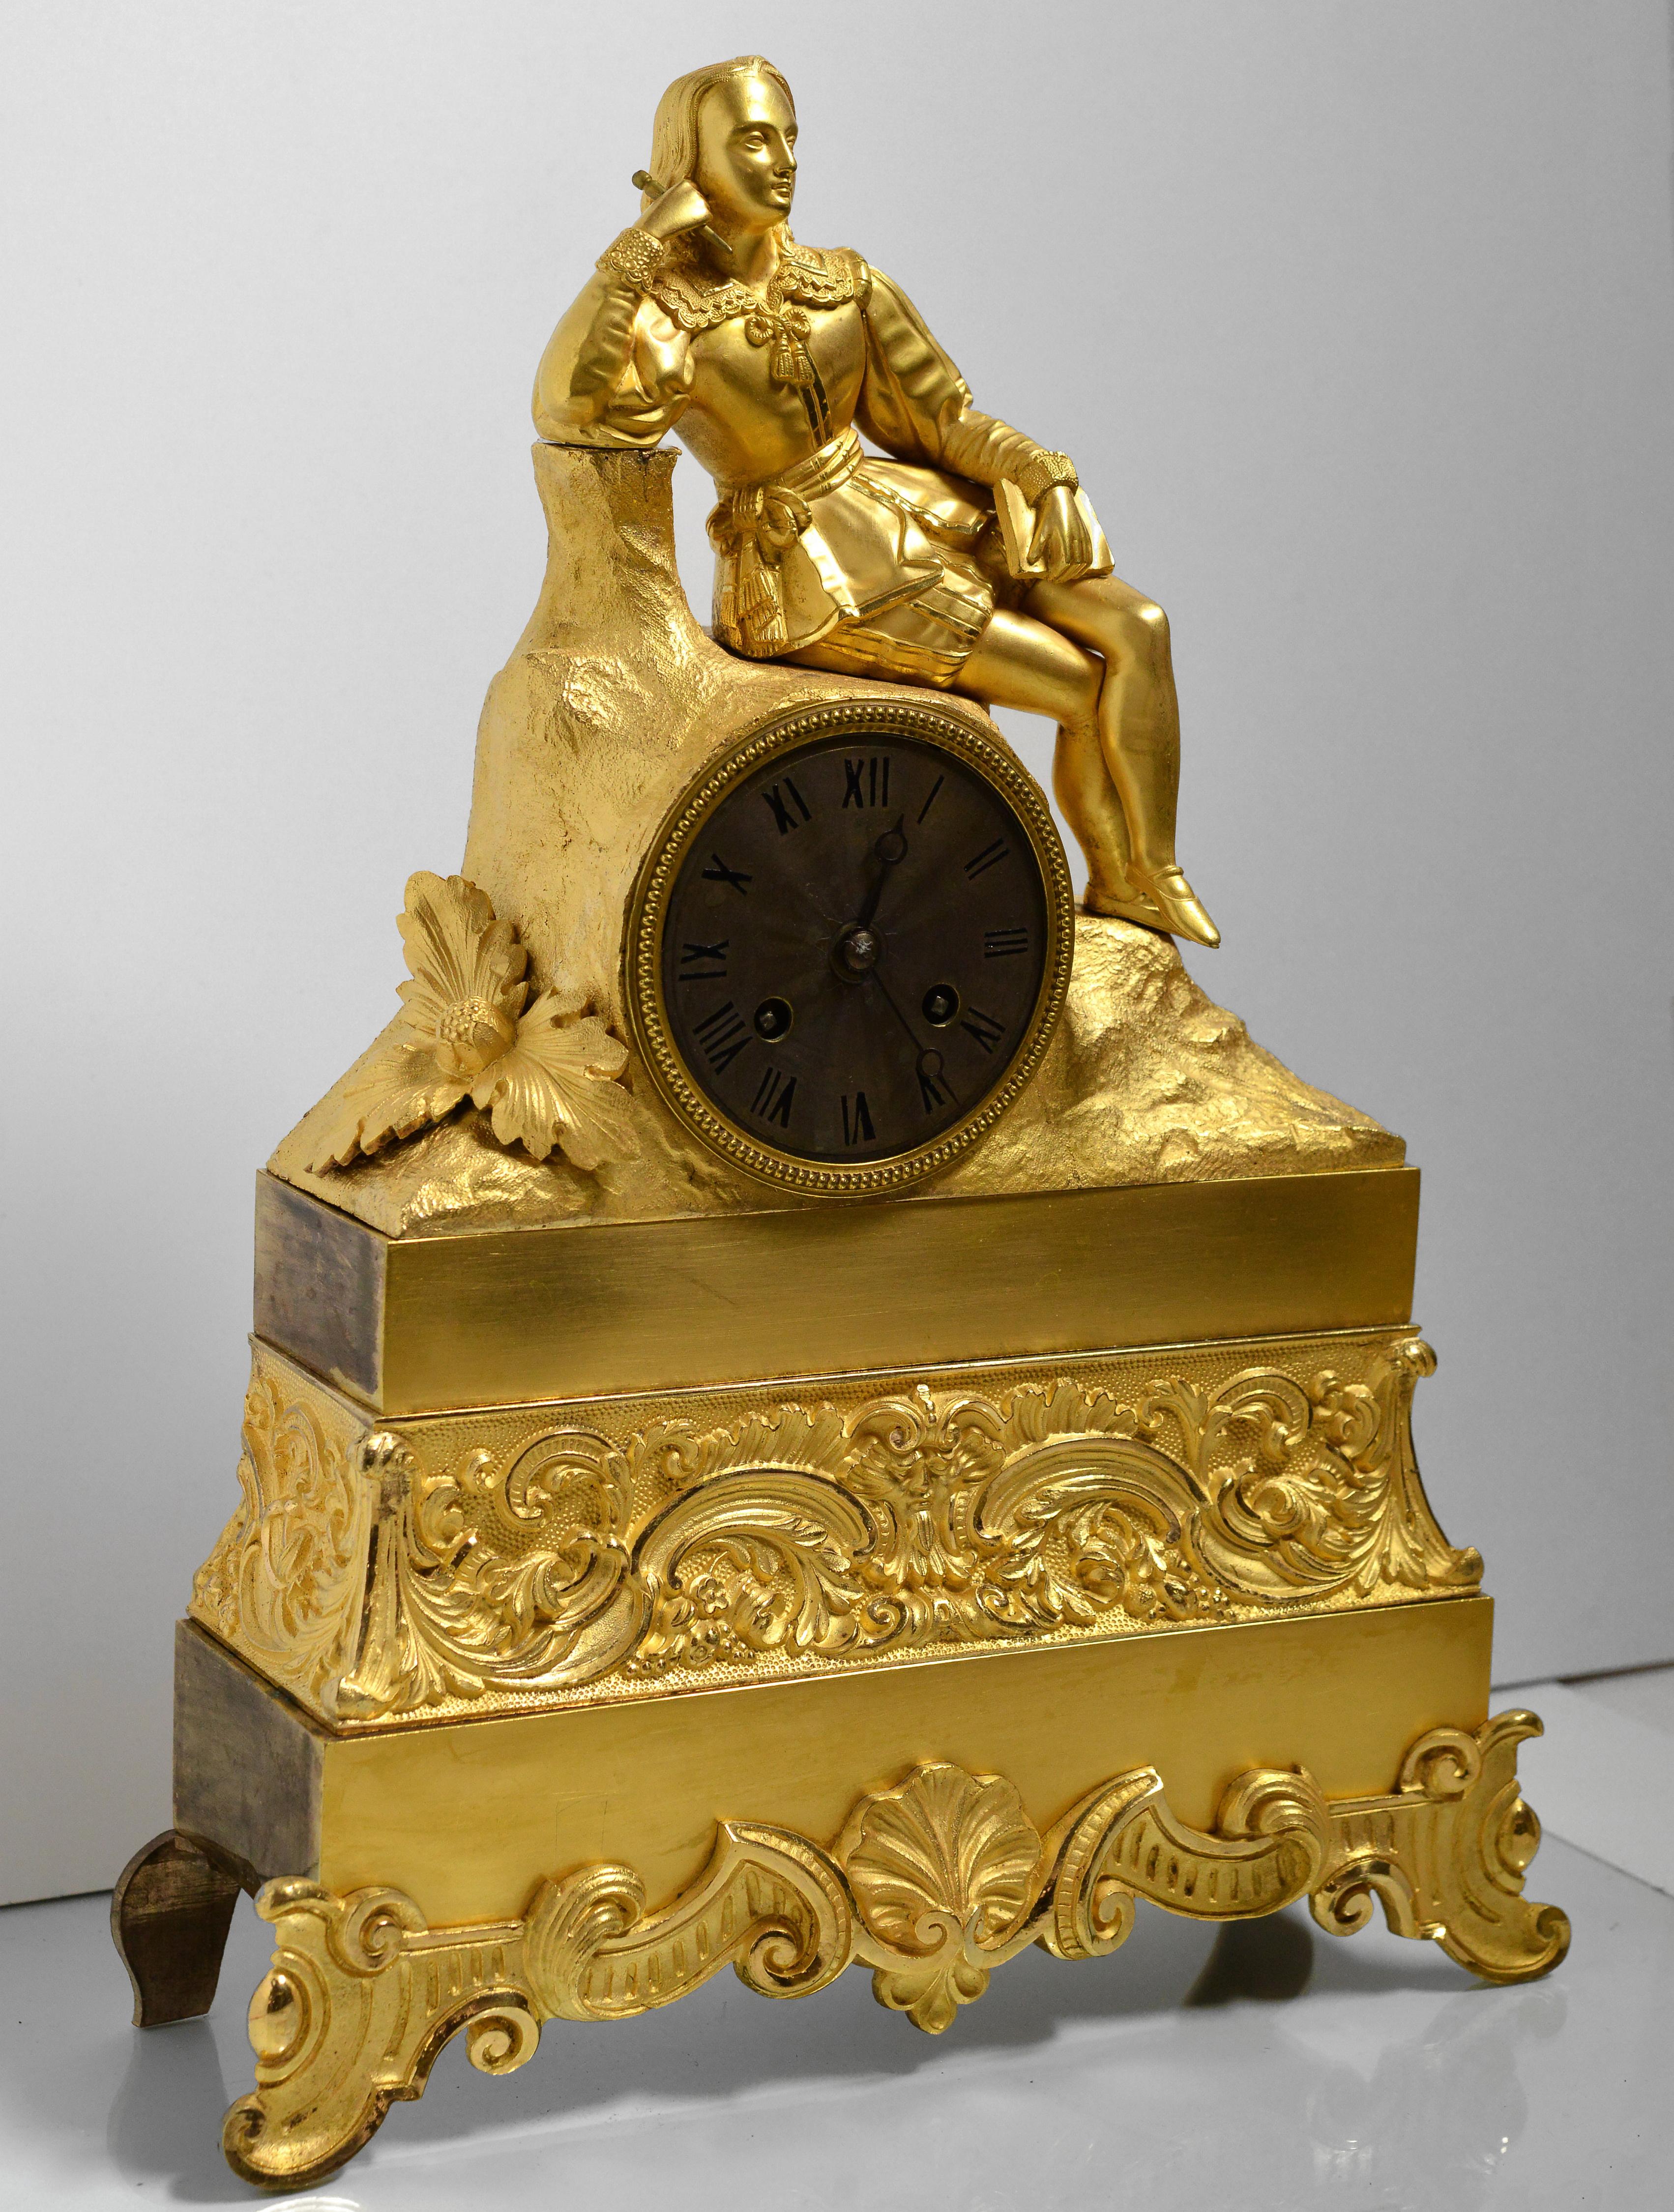 Travail fin et élégant du bronze doré comme horloge de cheminée dans le style romantique. Cadran argenté guilloché recouvert de patine. La sculpture en bronze a été réalisée par la technique du moulage à partir d'un modèle en cire. Au début du 19e